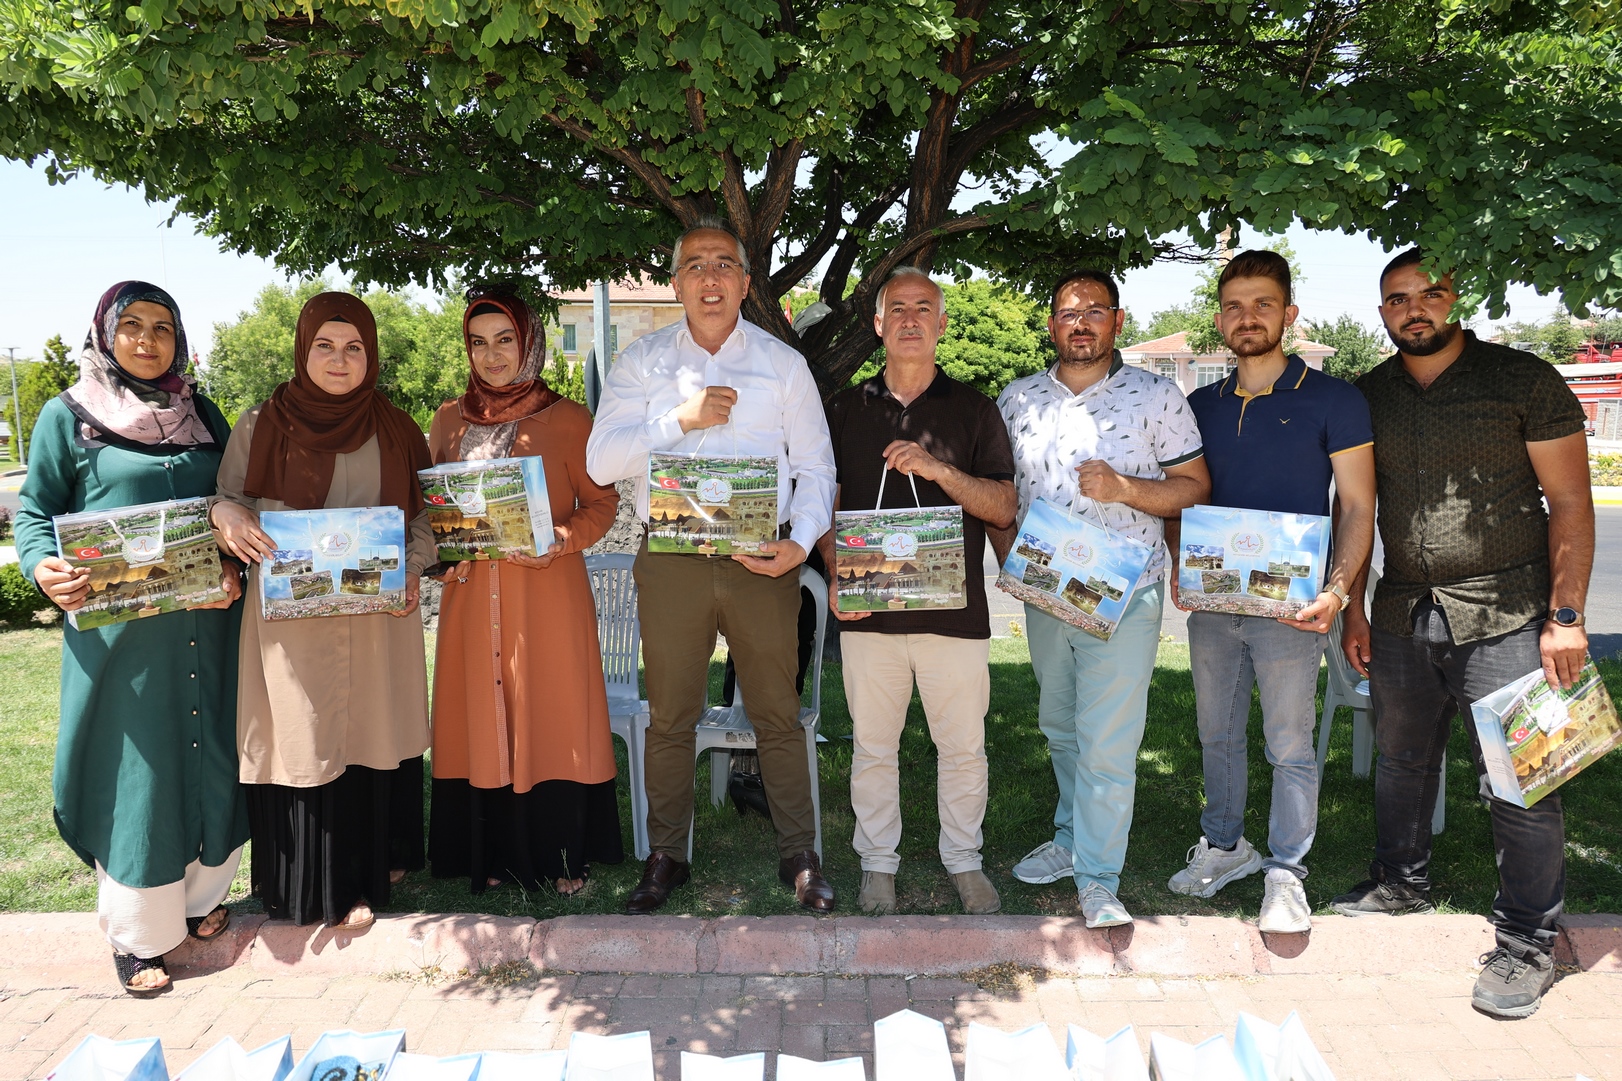  Nevşehir’de Mezarlık Ziyaretlerini Gerçekleştiren Vatandaşlara Yasin-i Şerif hediye edildi